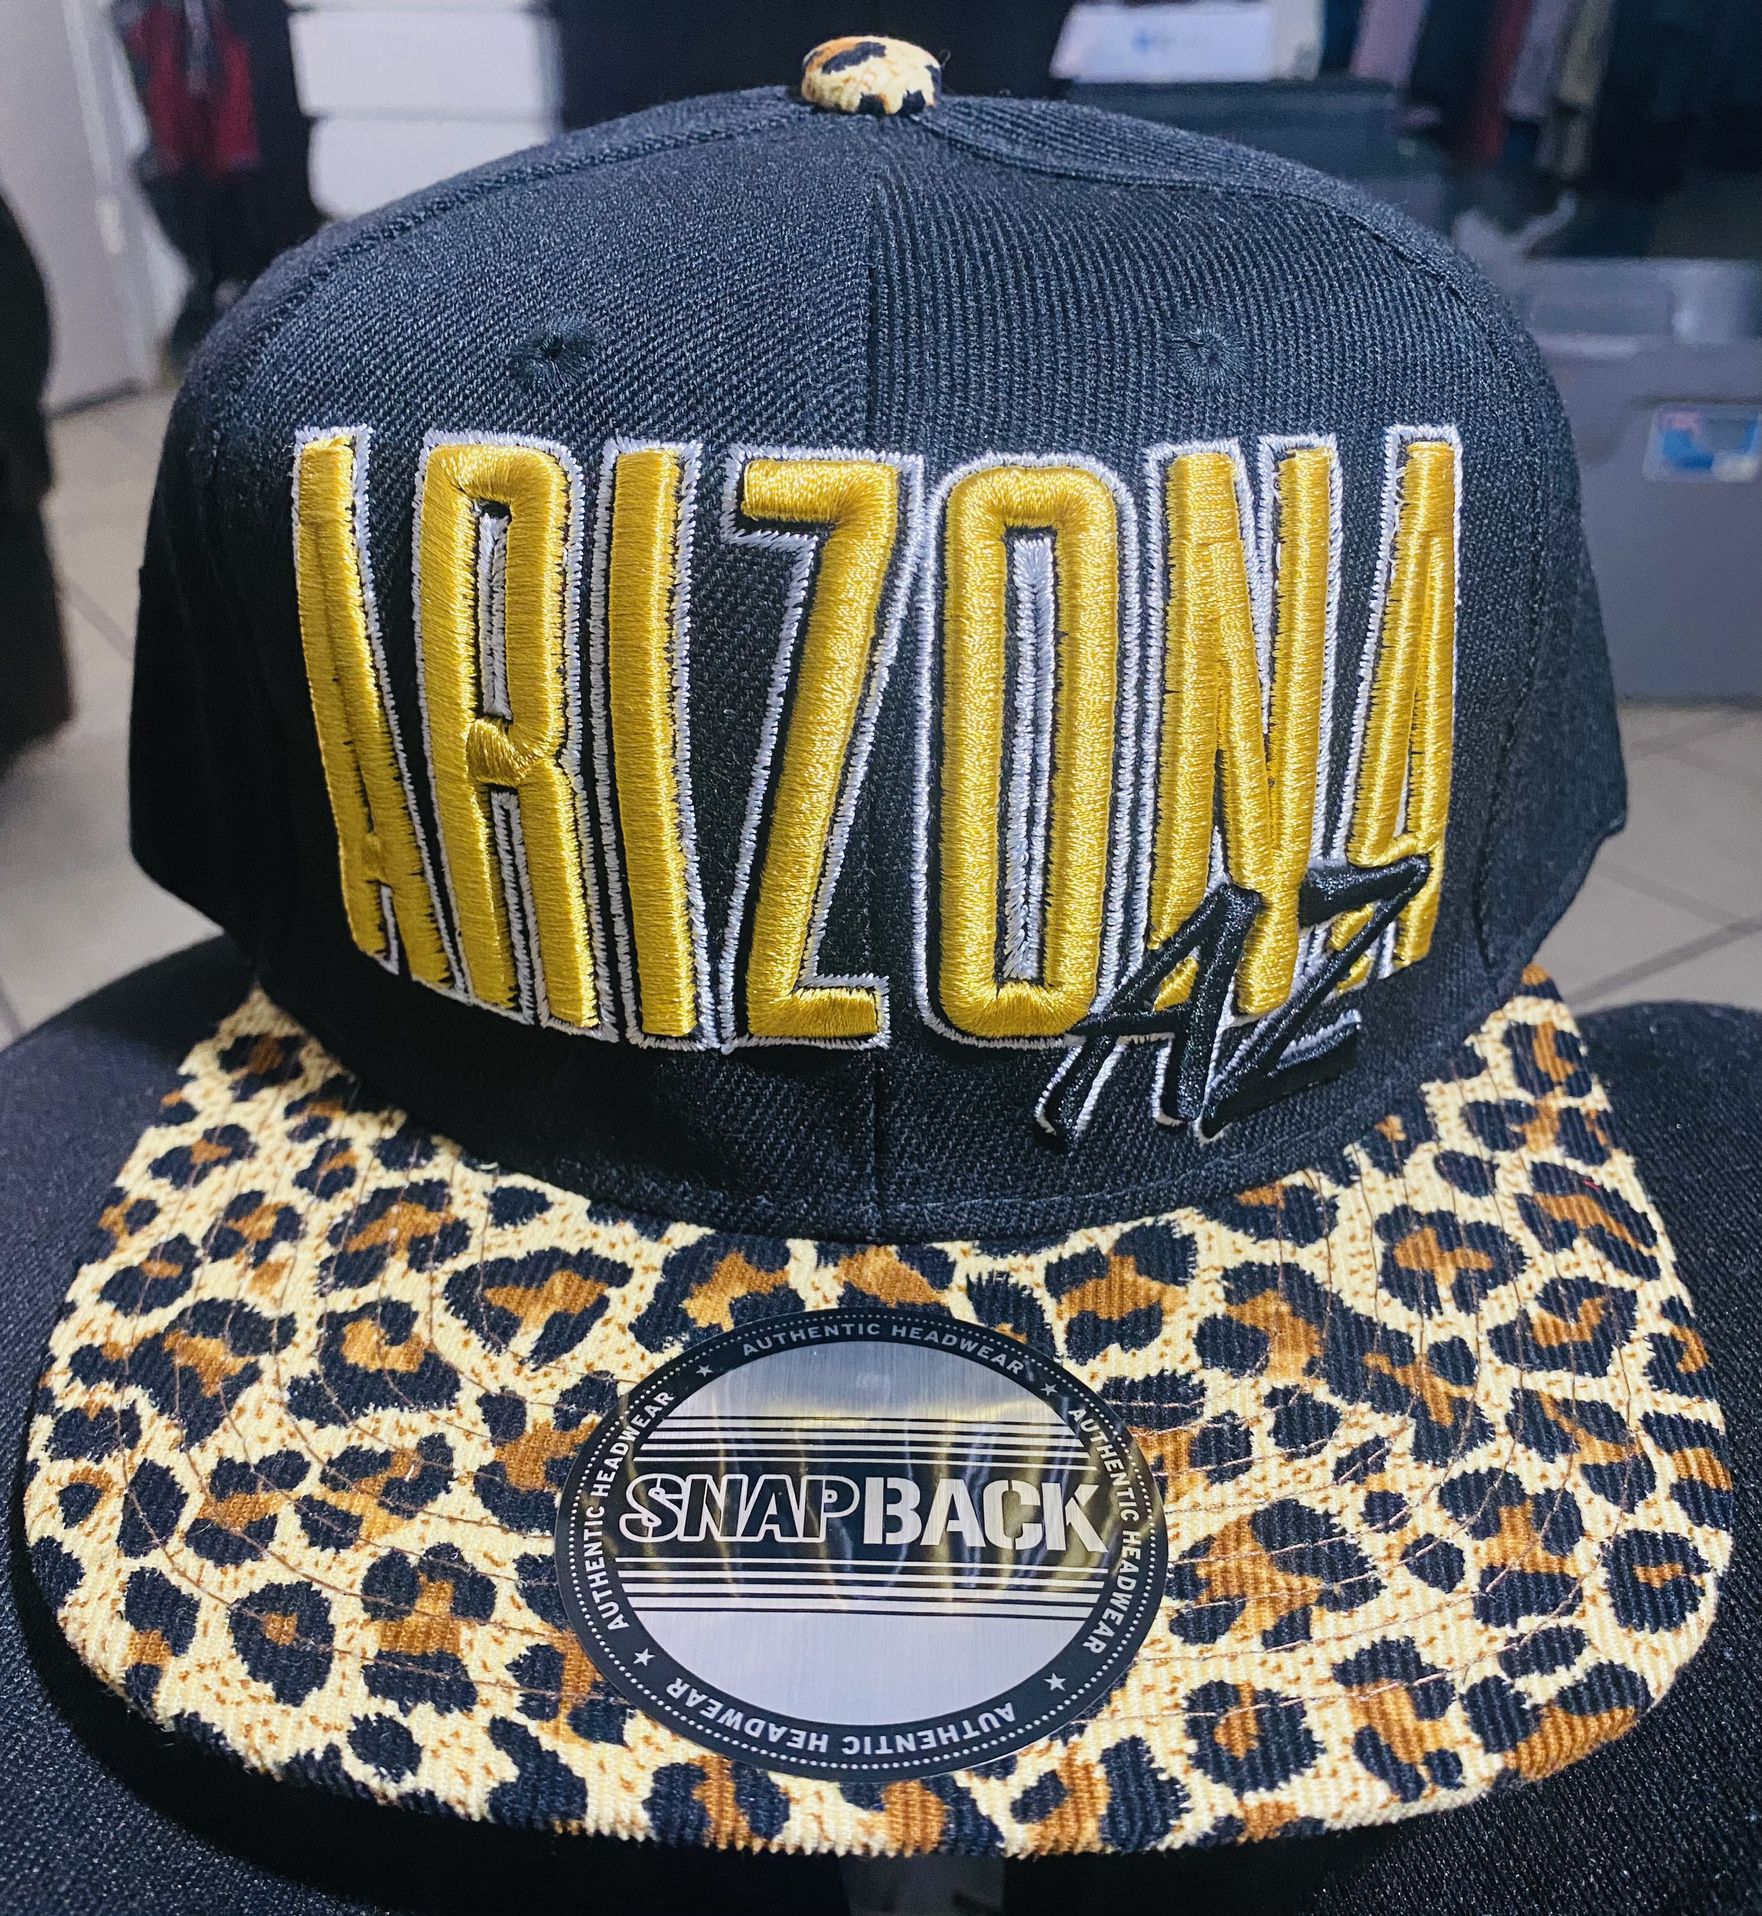 Arizona Hat